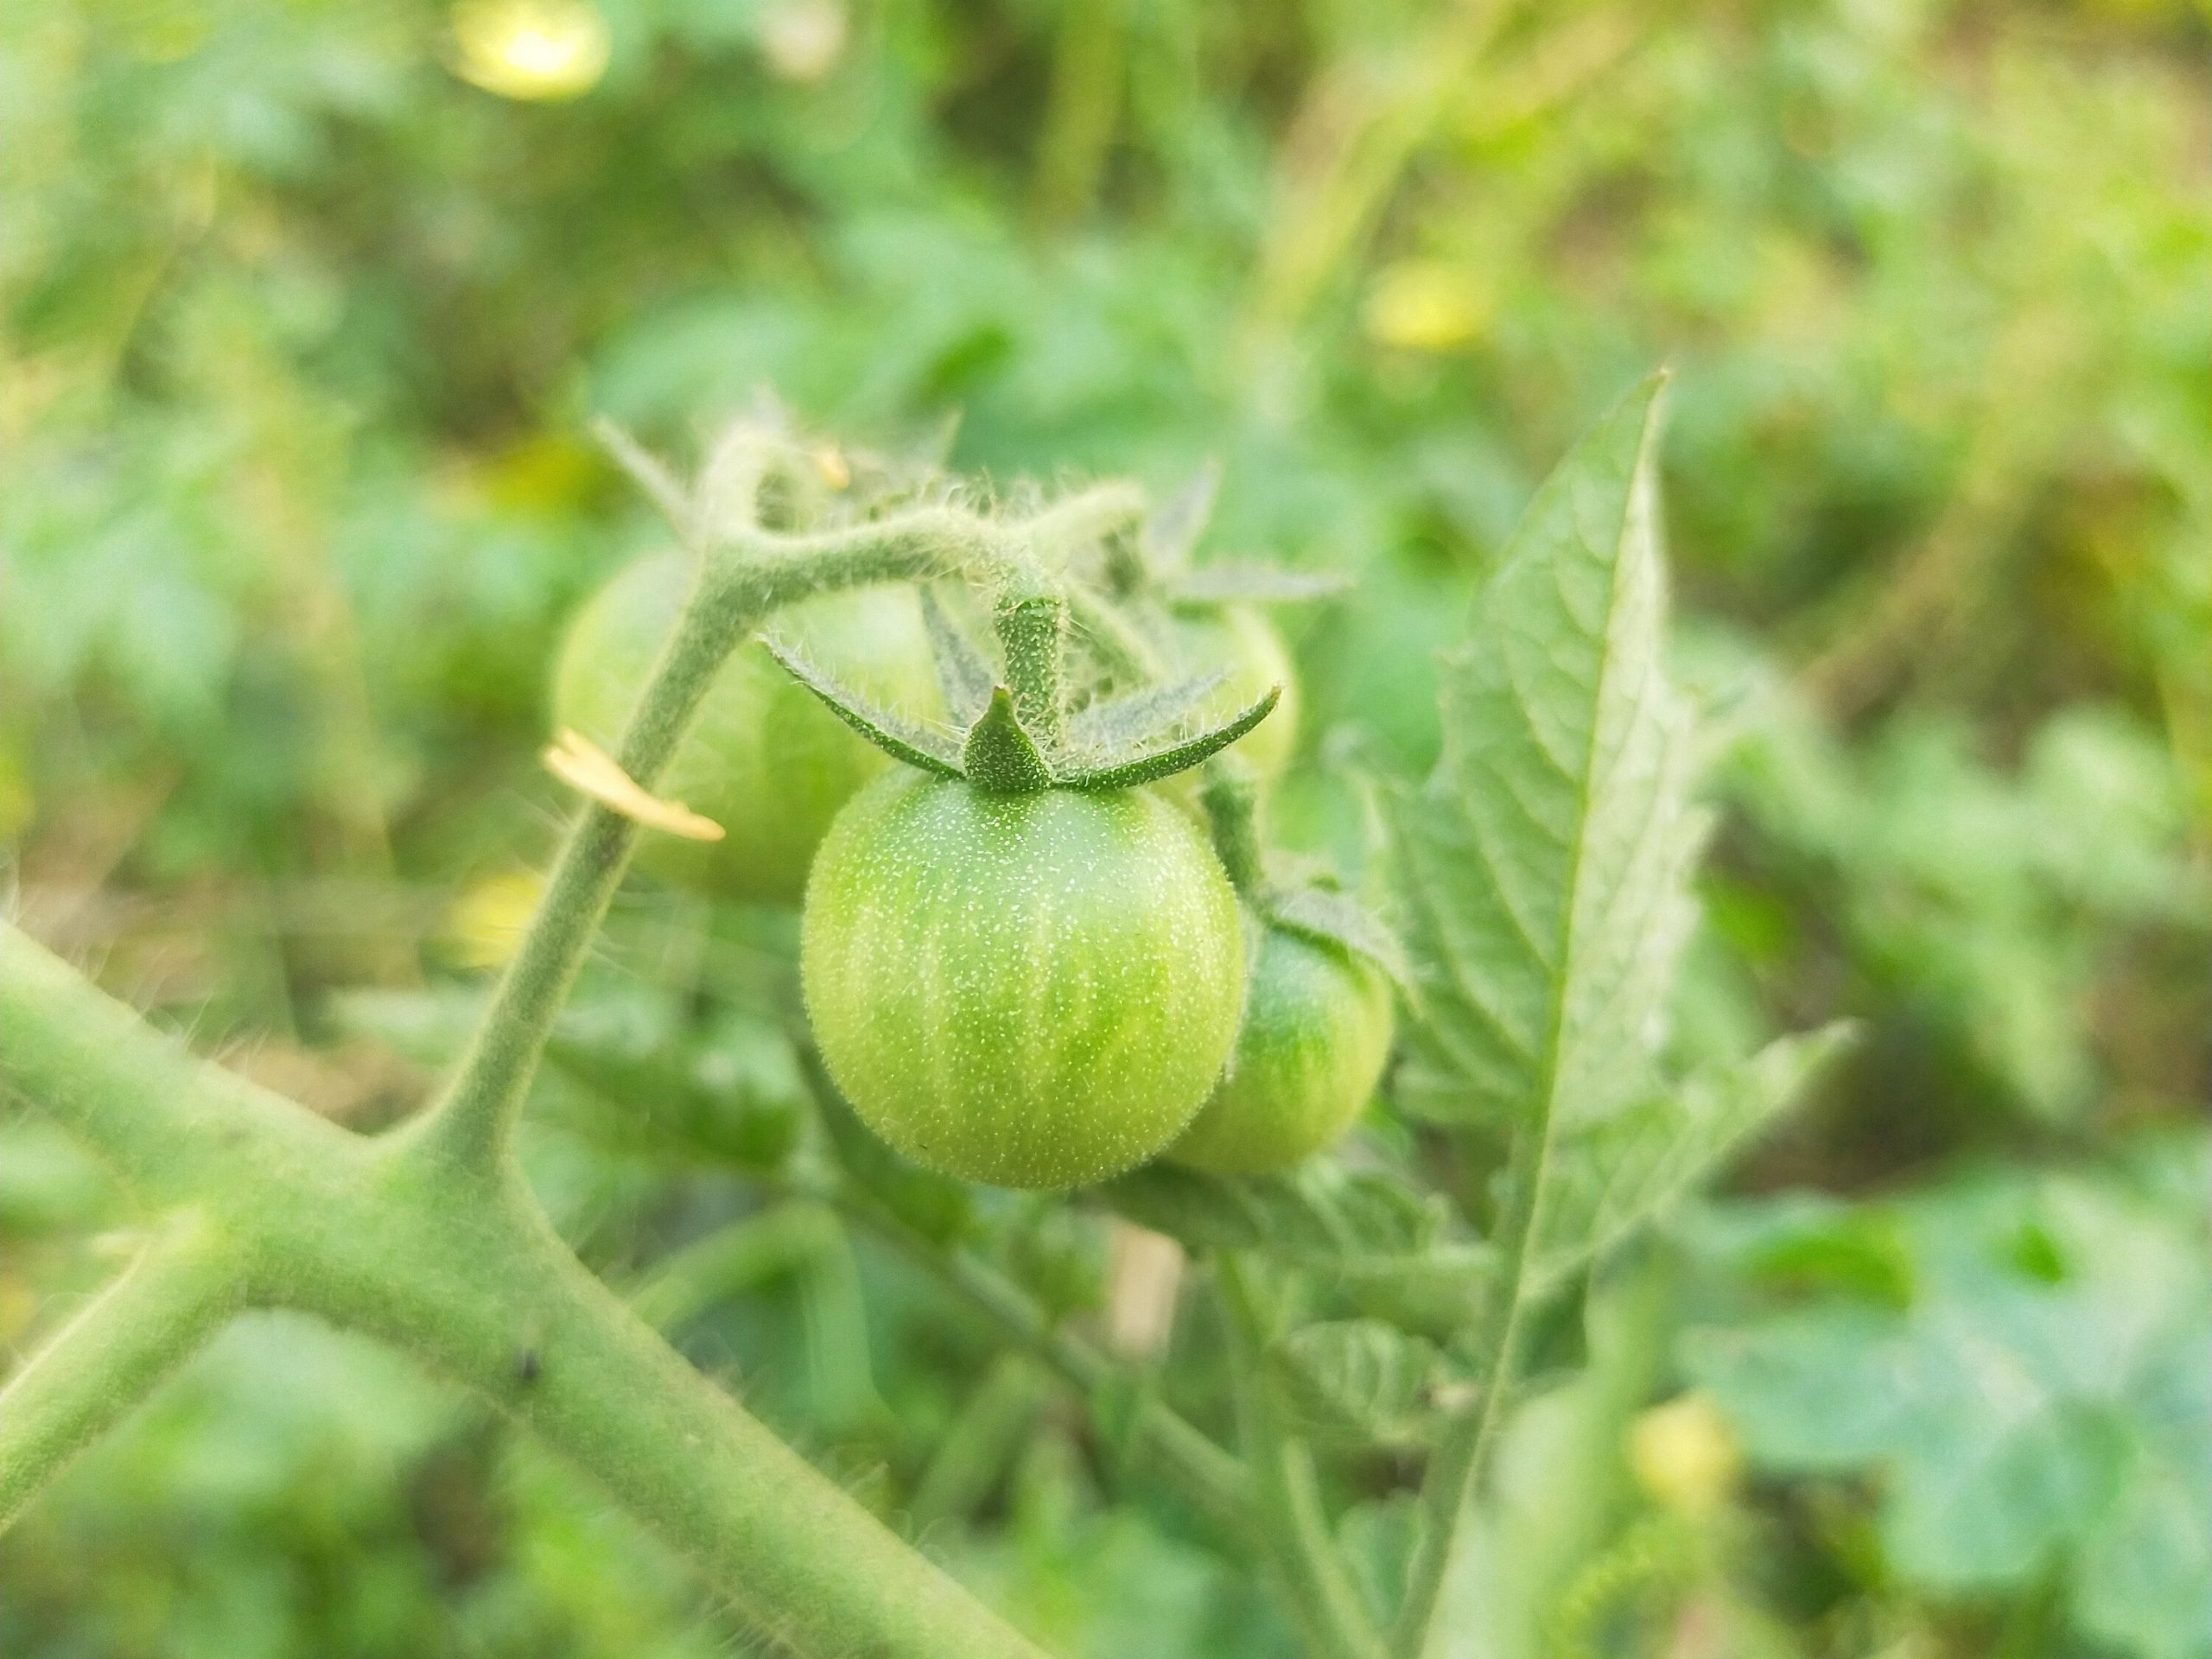 A tomato plant